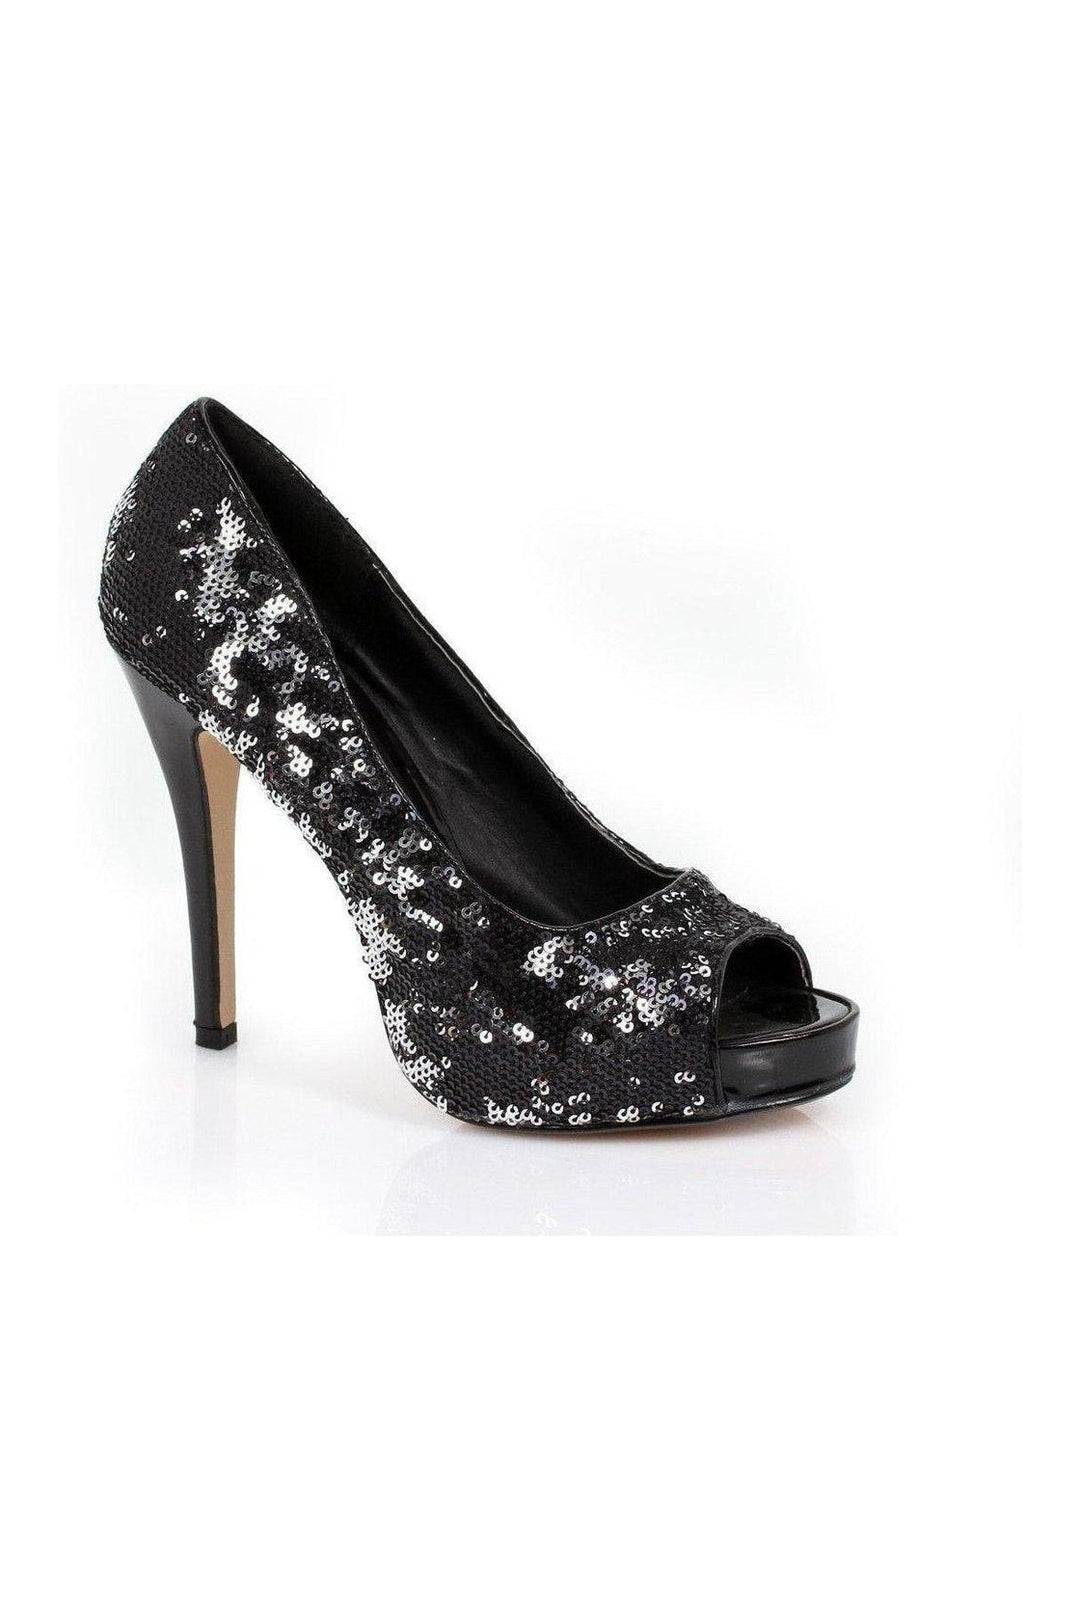 415-FLAMINGO Pump | Black Sequins-Ellie Shoes-SEXYSHOES.COM